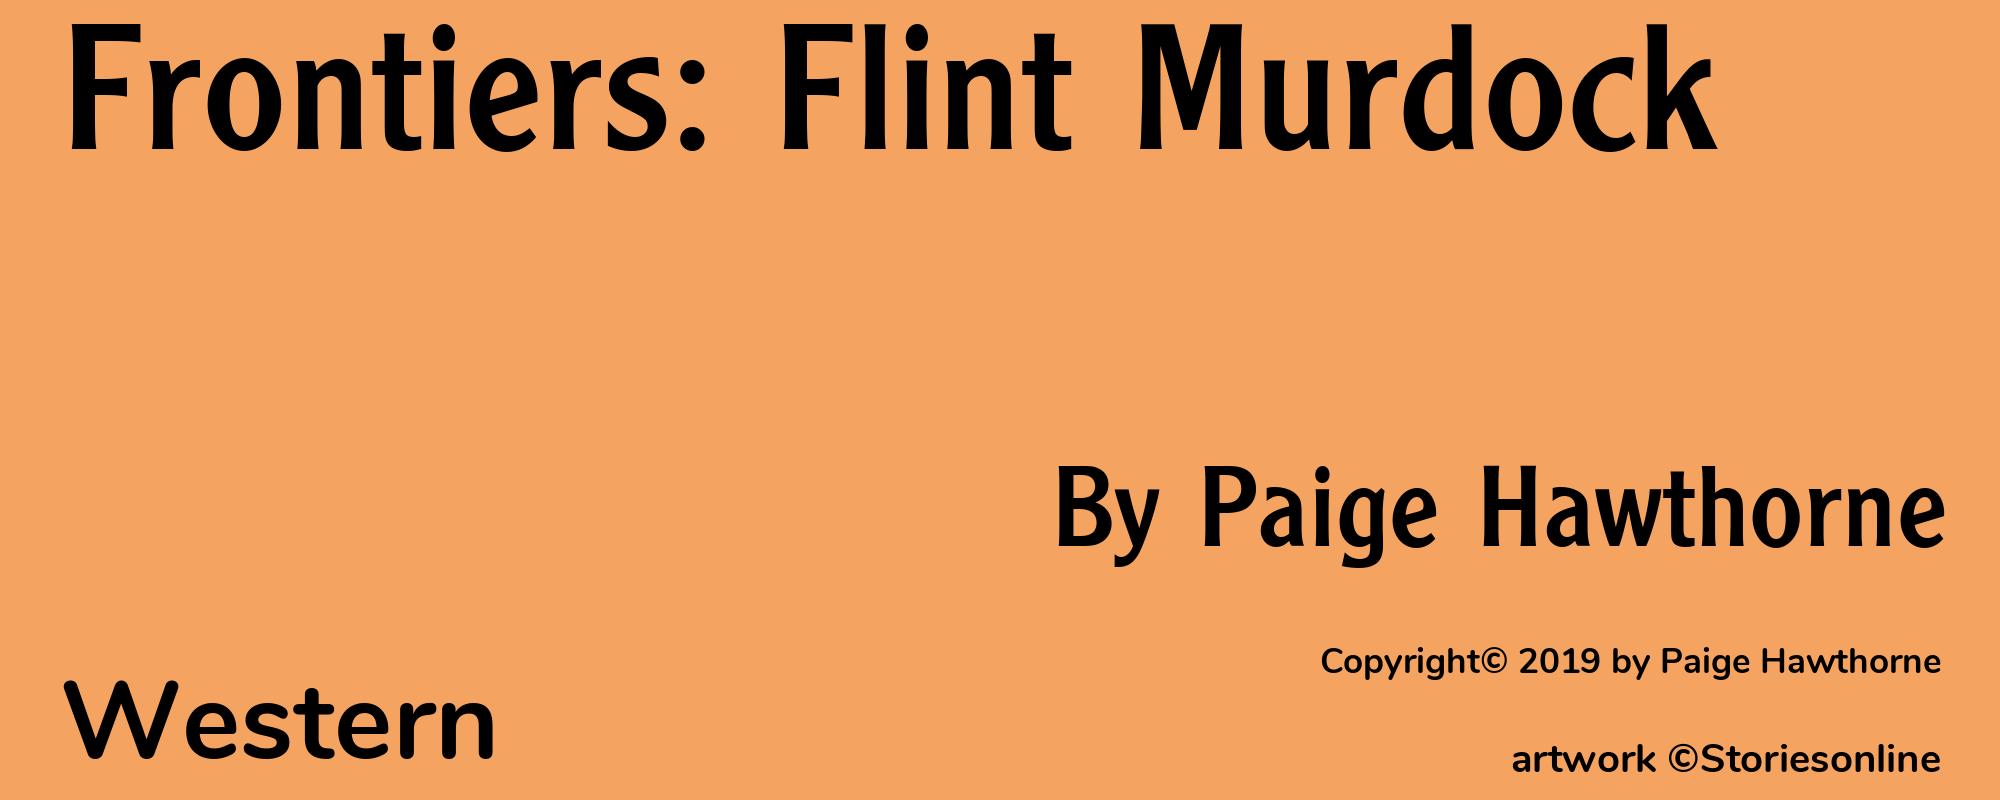 Frontiers: Flint Murdock - Cover